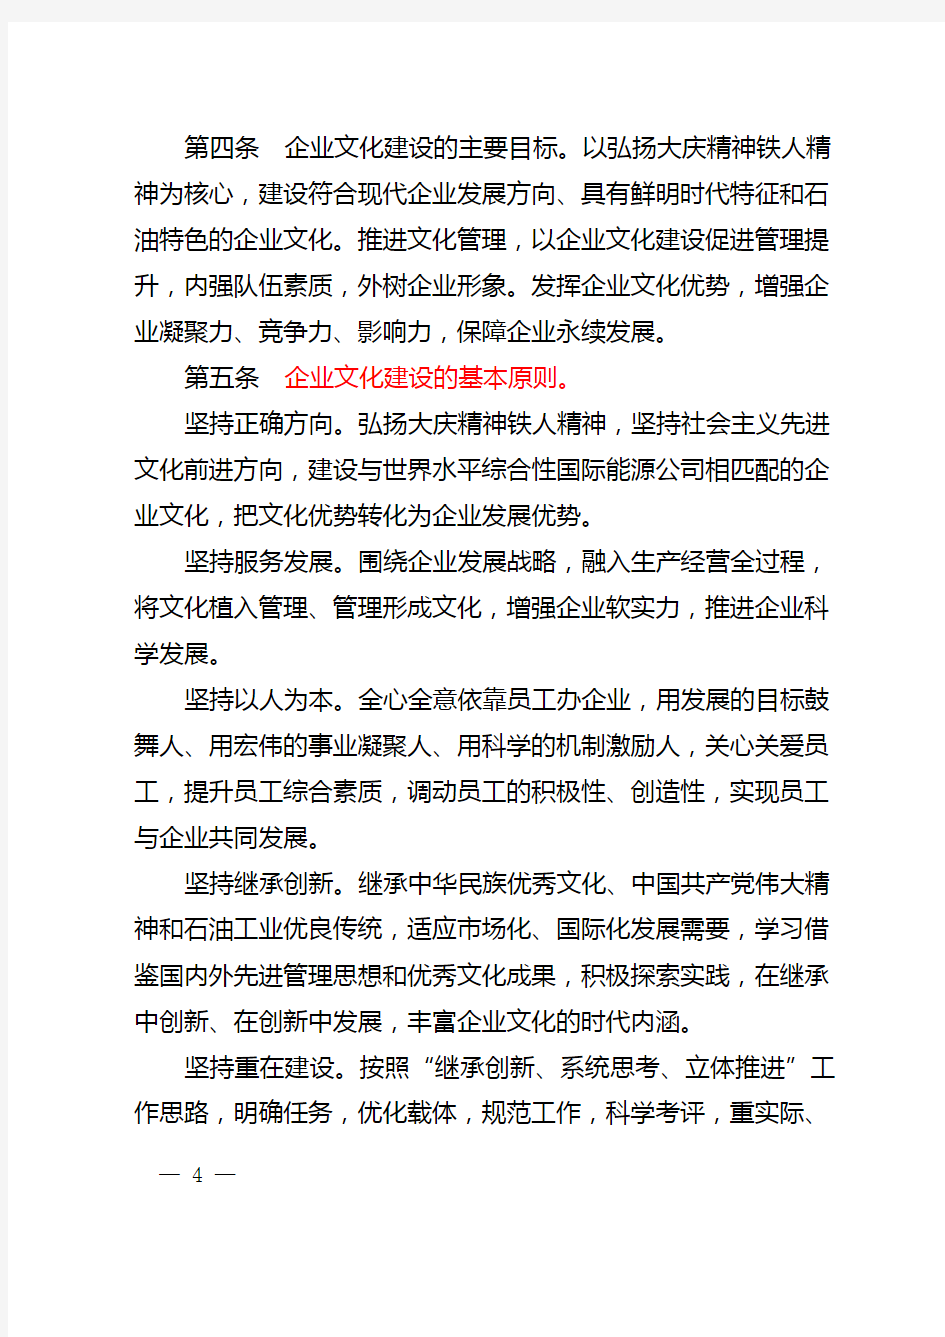 中国石油企业文化建设工作条例(中油党组2013[31]号)